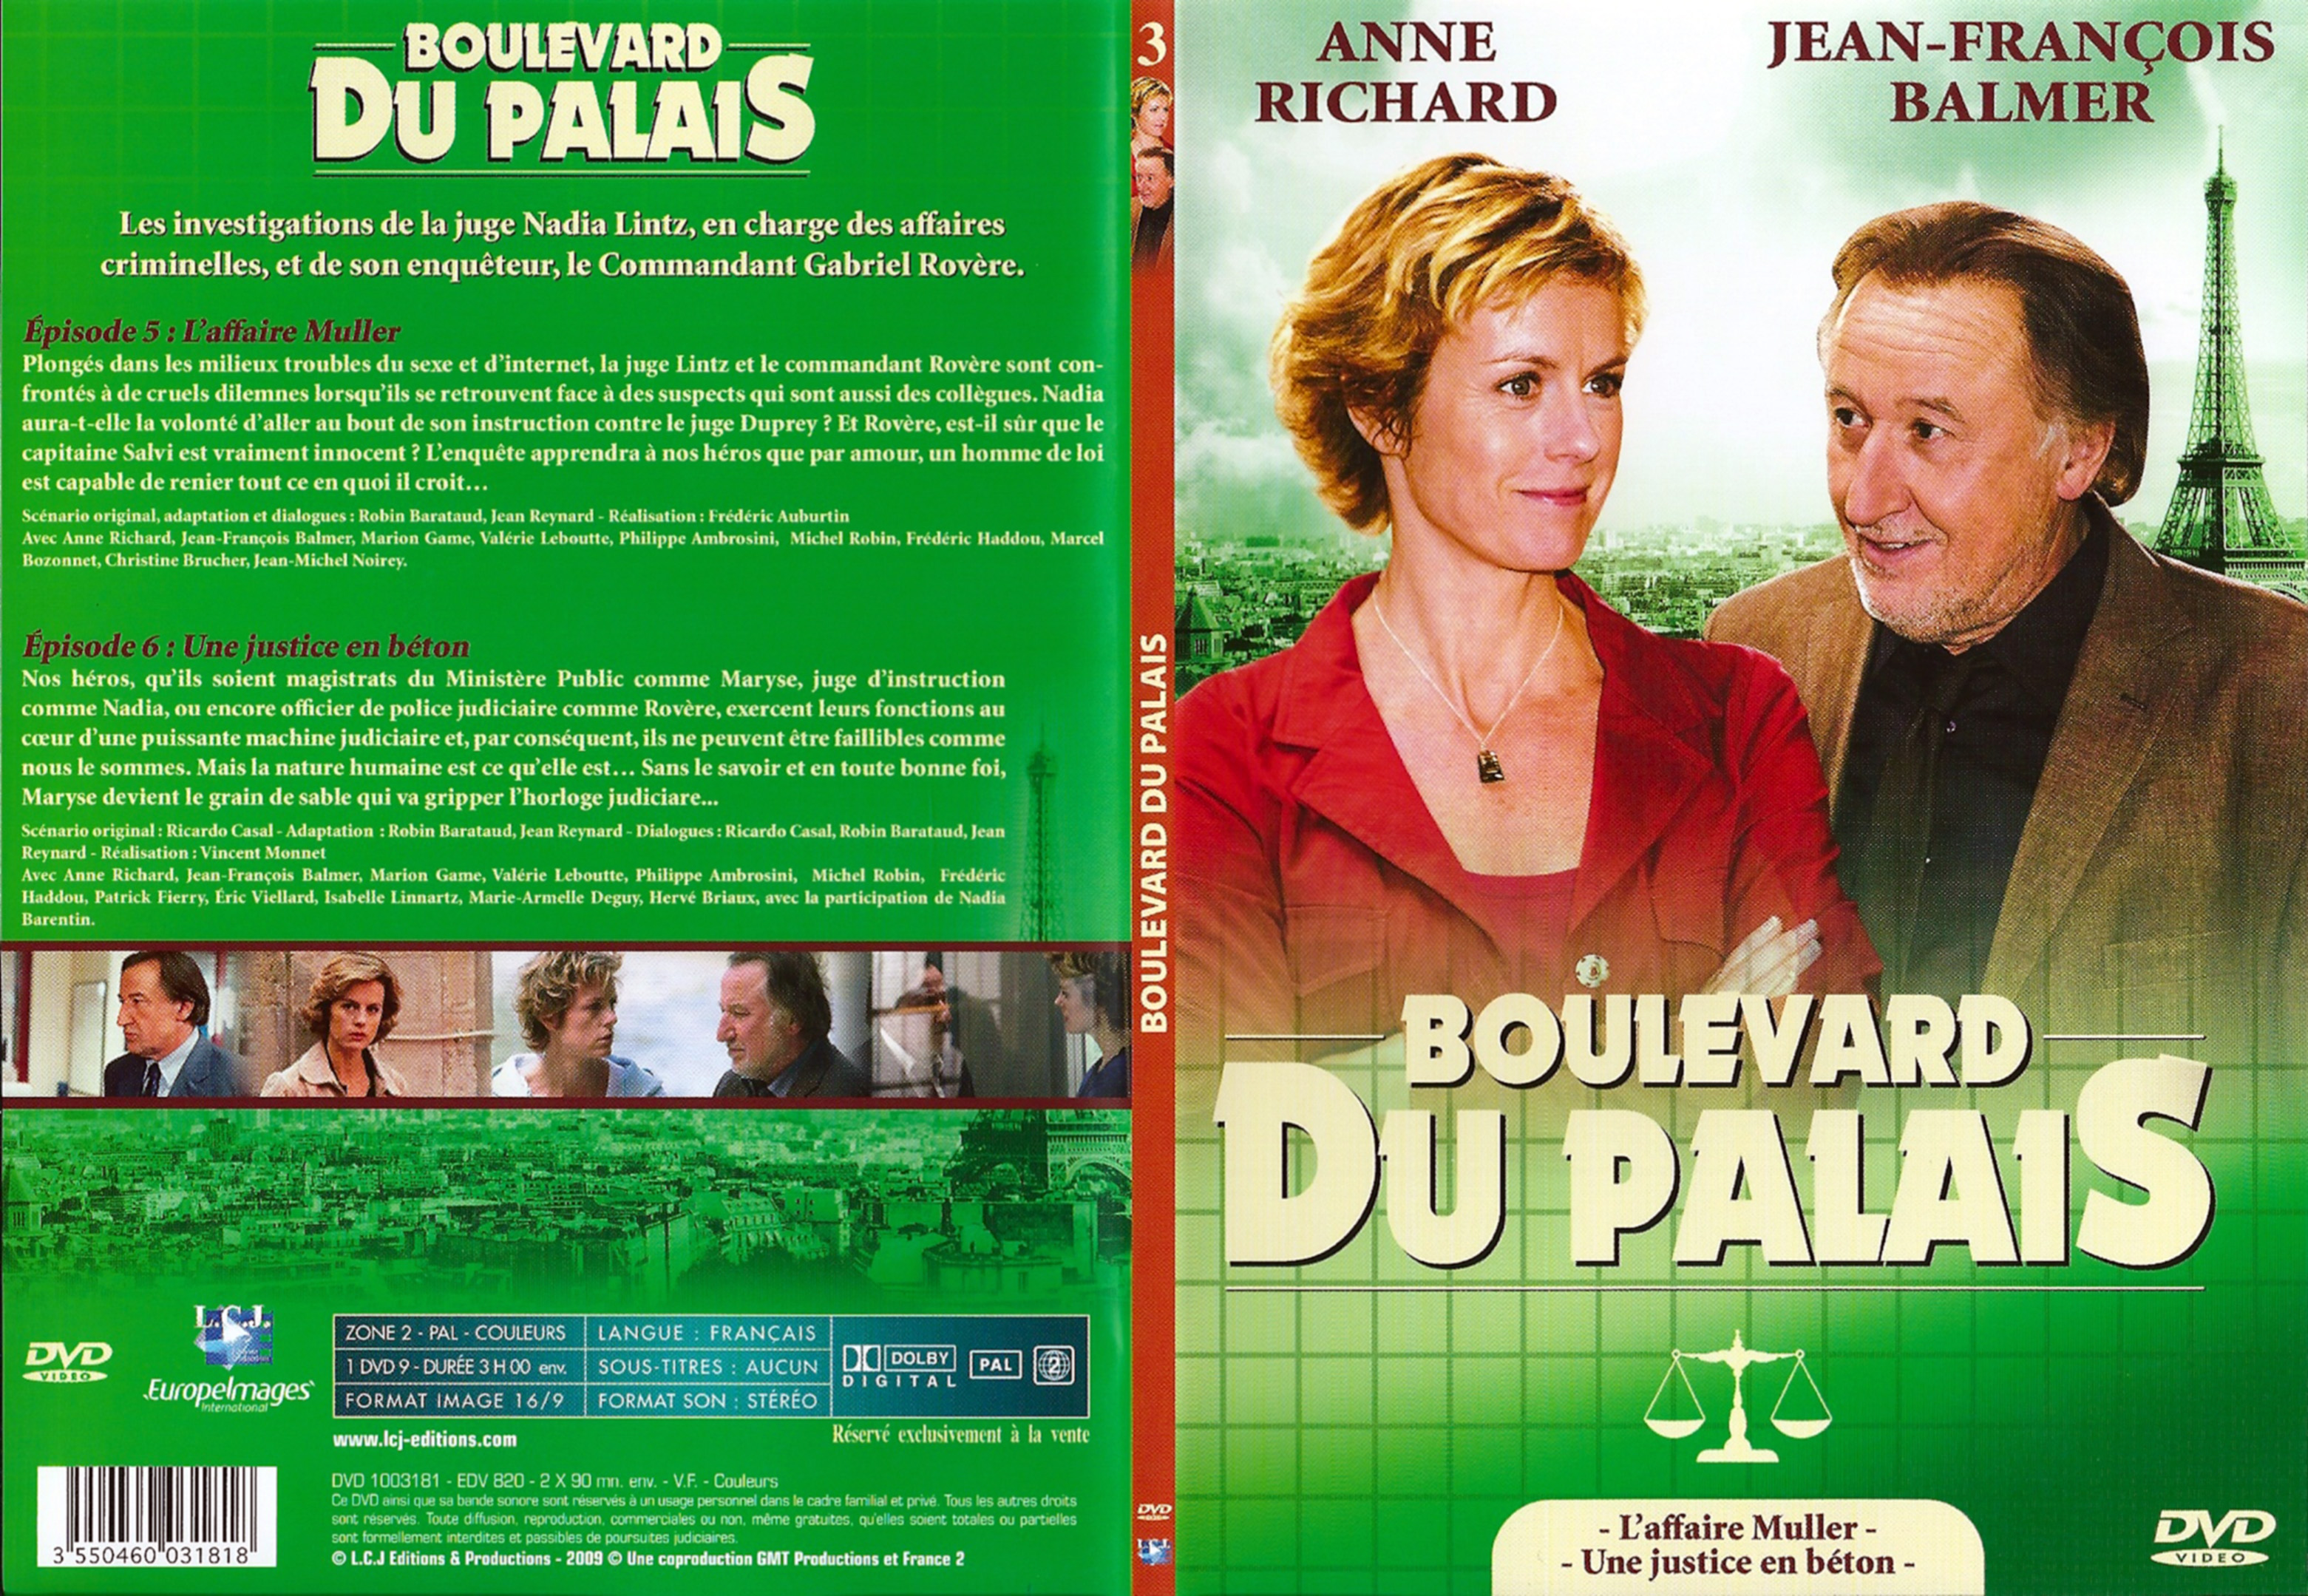 Jaquette DVD Boulevard du palais Saison 1 DVD 3